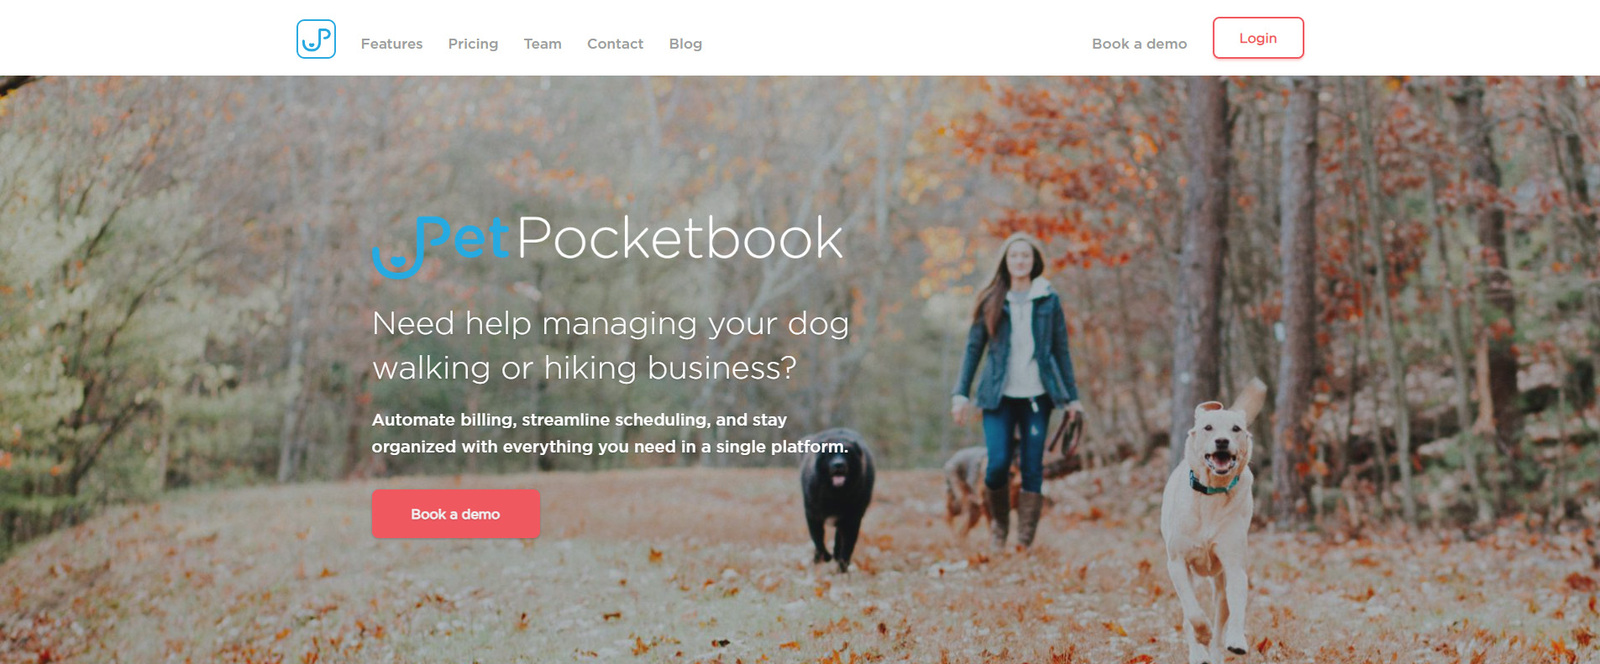 มุมมองของ PetPocketbook หนึ่งในตัวเลือกซอฟต์แวร์ดูแลสัตว์เลี้ยงที่ดีที่สุดสำหรับผู้พาสัตว์เลี้ยงเดินเล่น